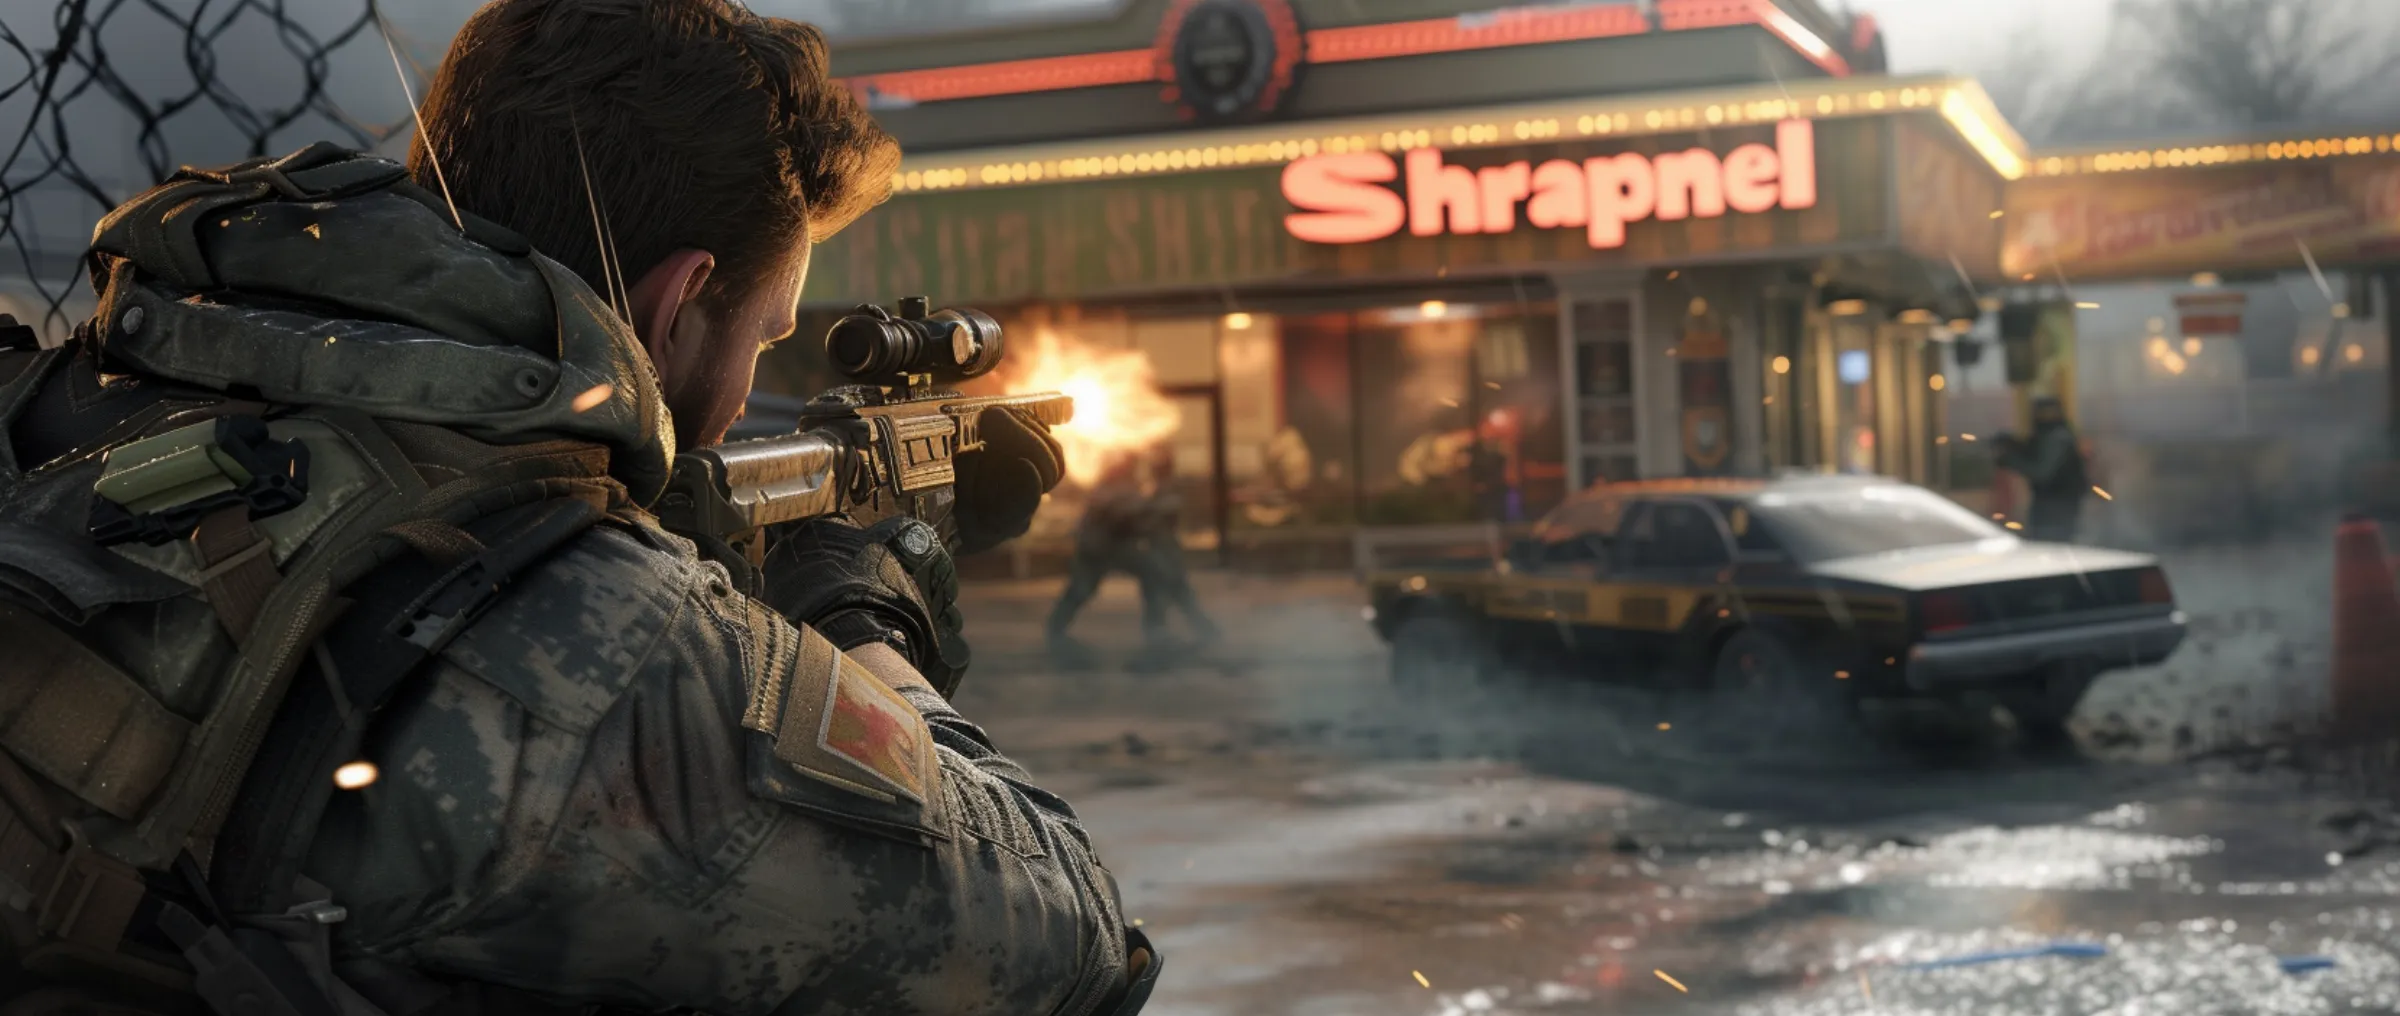 Epic Games добавляет новую игру Shrapnel, созданную в духе Call of Duty